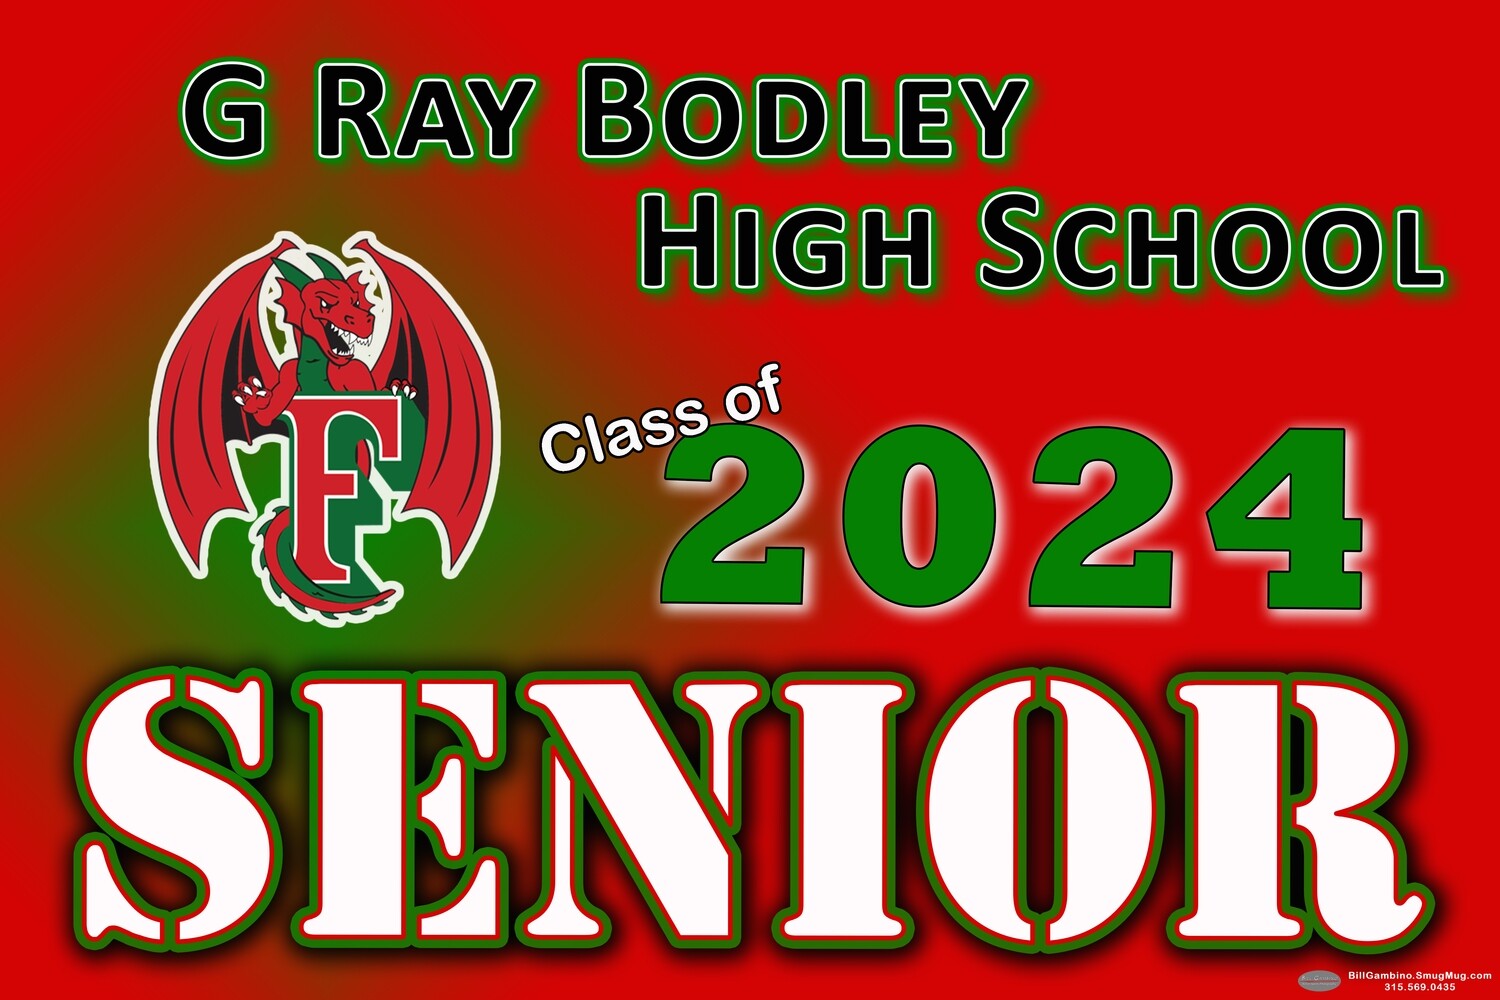 G Ray Bodley High School